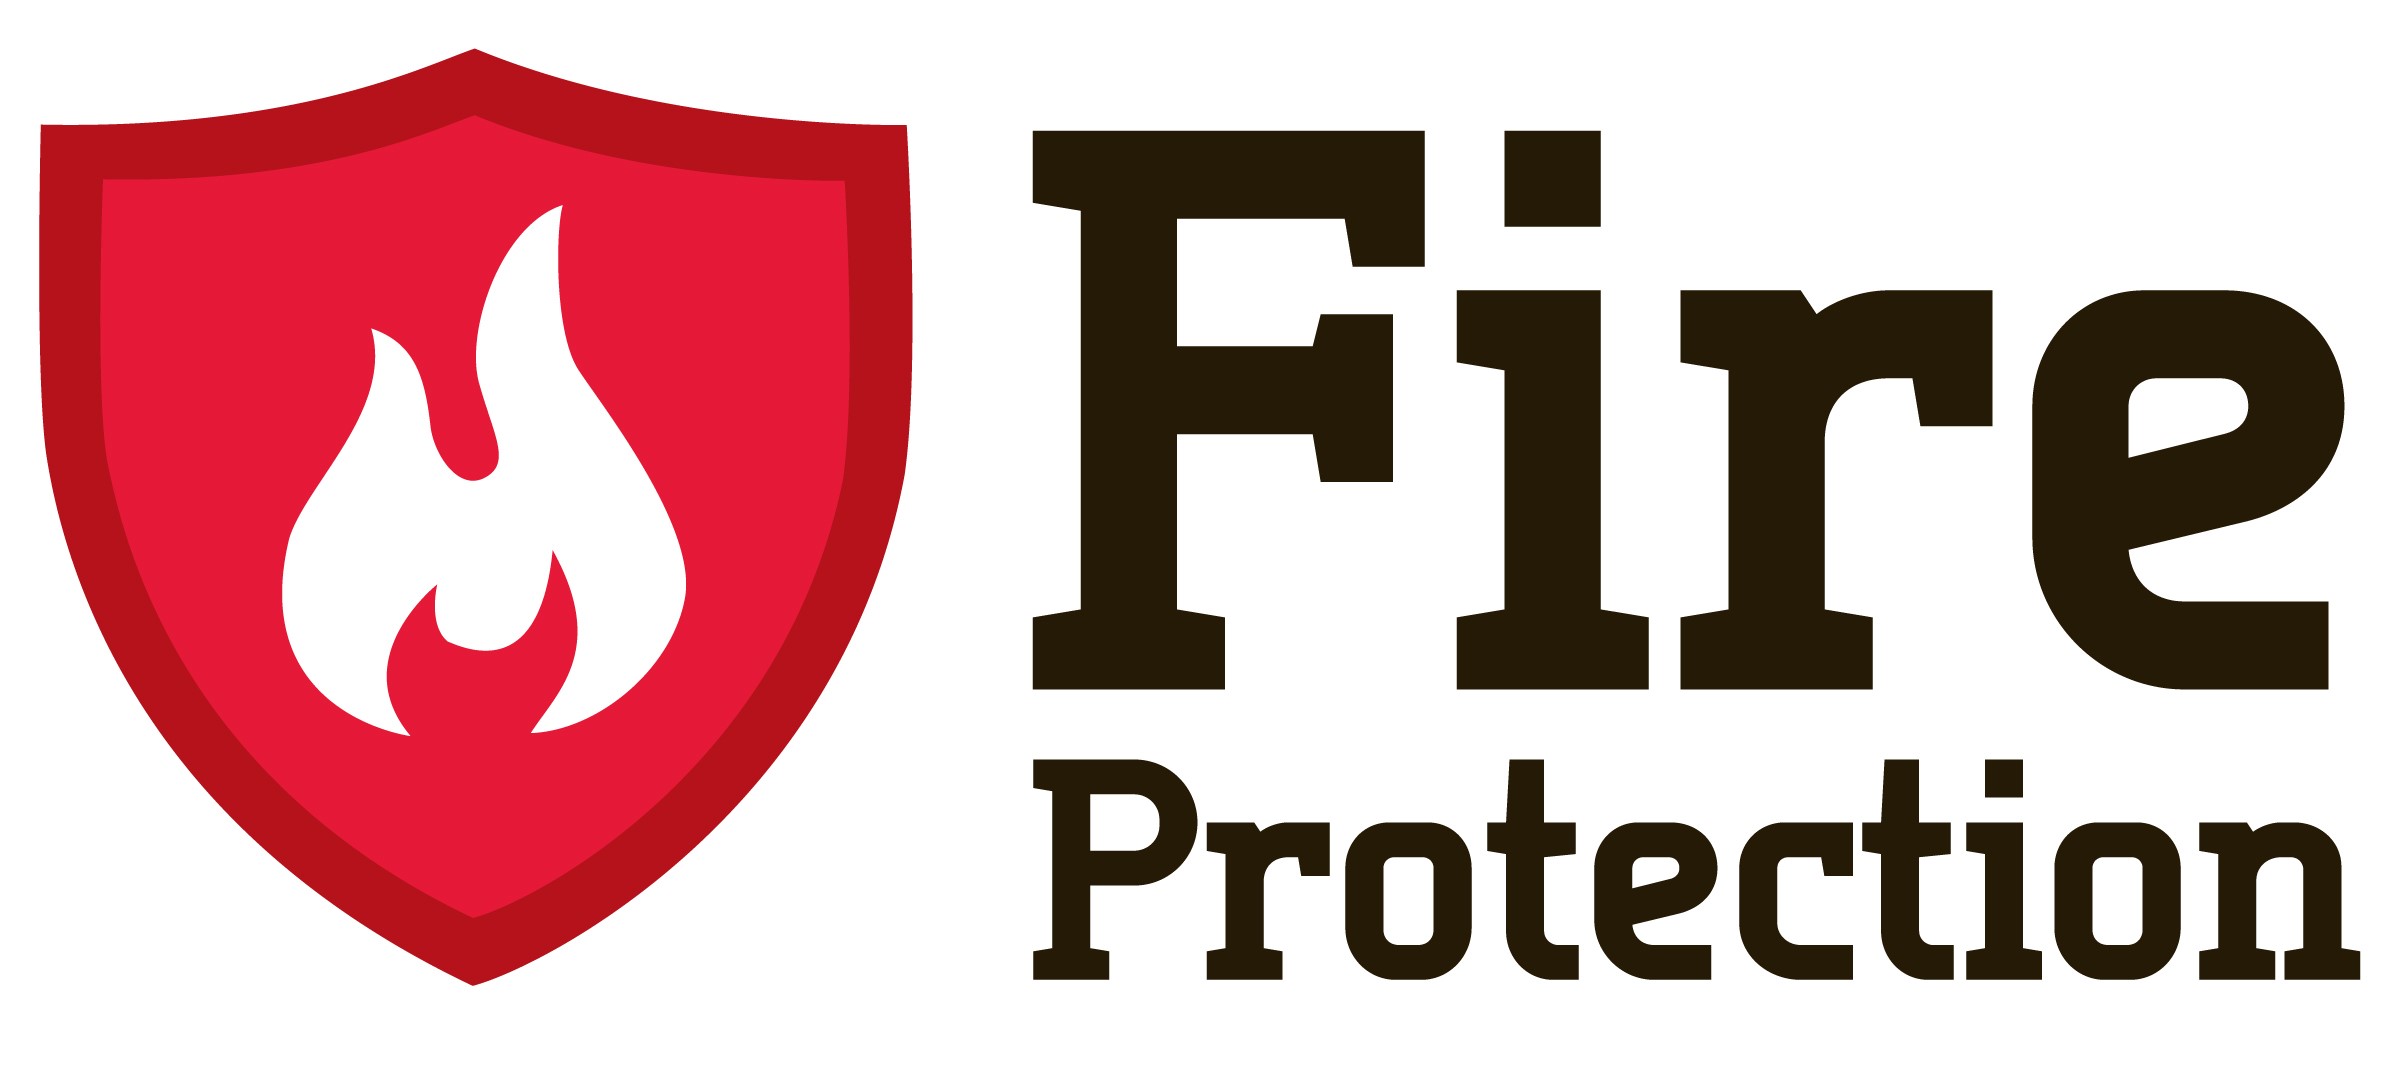 Futbol Fireprotection S.a.